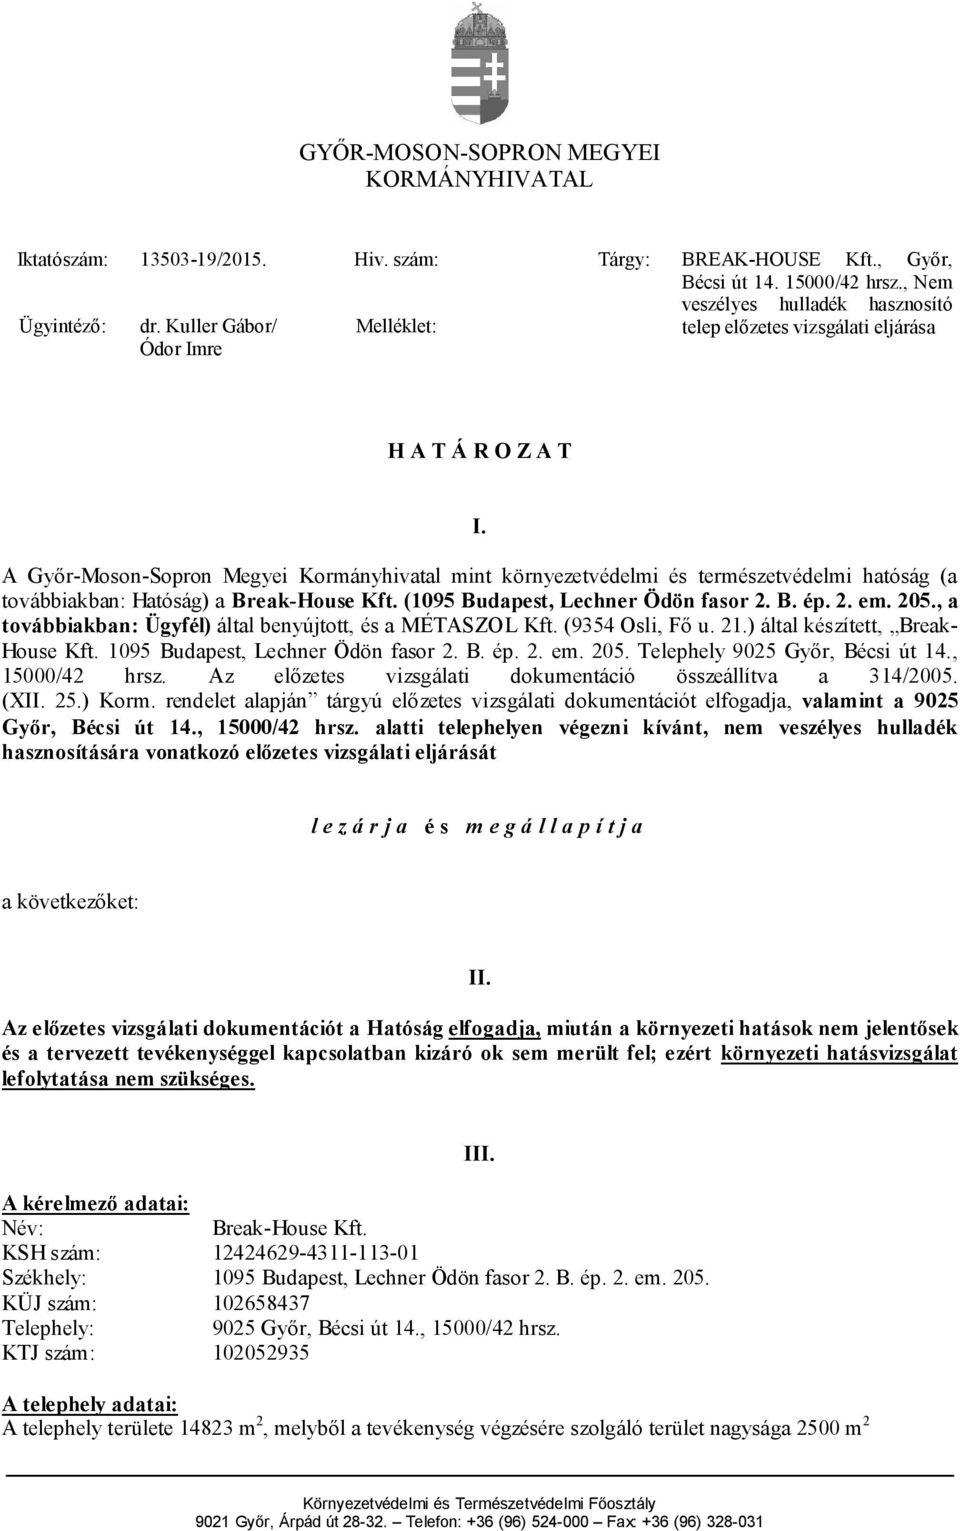 A Győr-Moson-Sopron Megyei Kormányhivatal mint környezetvédelmi és természetvédelmi hatóság (a továbbiakban: Hatóság) a Break-House Kft. (1095 Budapest, Lechner Ödön fasor 2. B. ép. 2. em. 205.